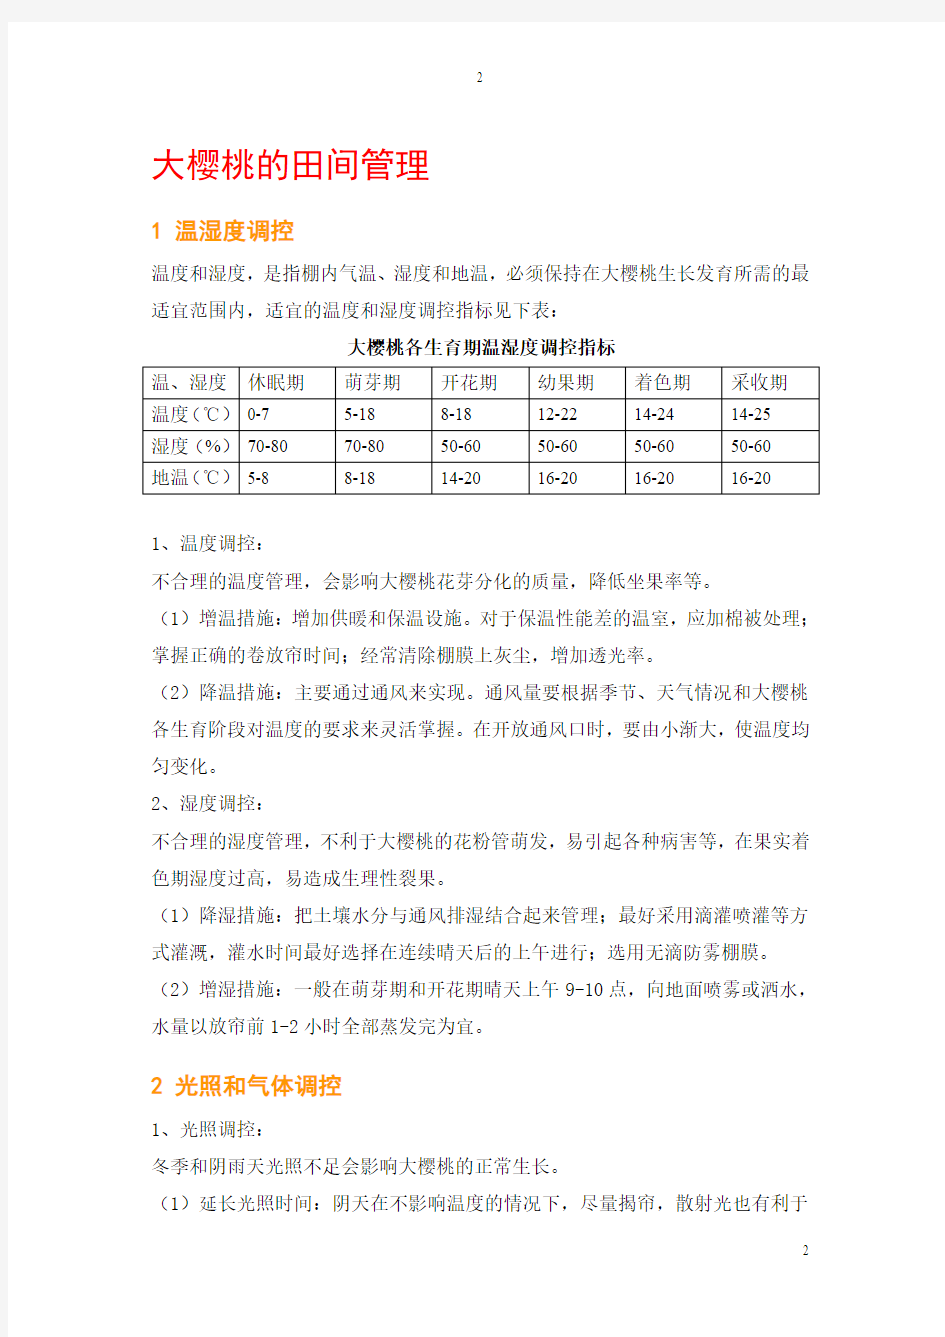 大樱桃温室栽培的技术手册精简版201408